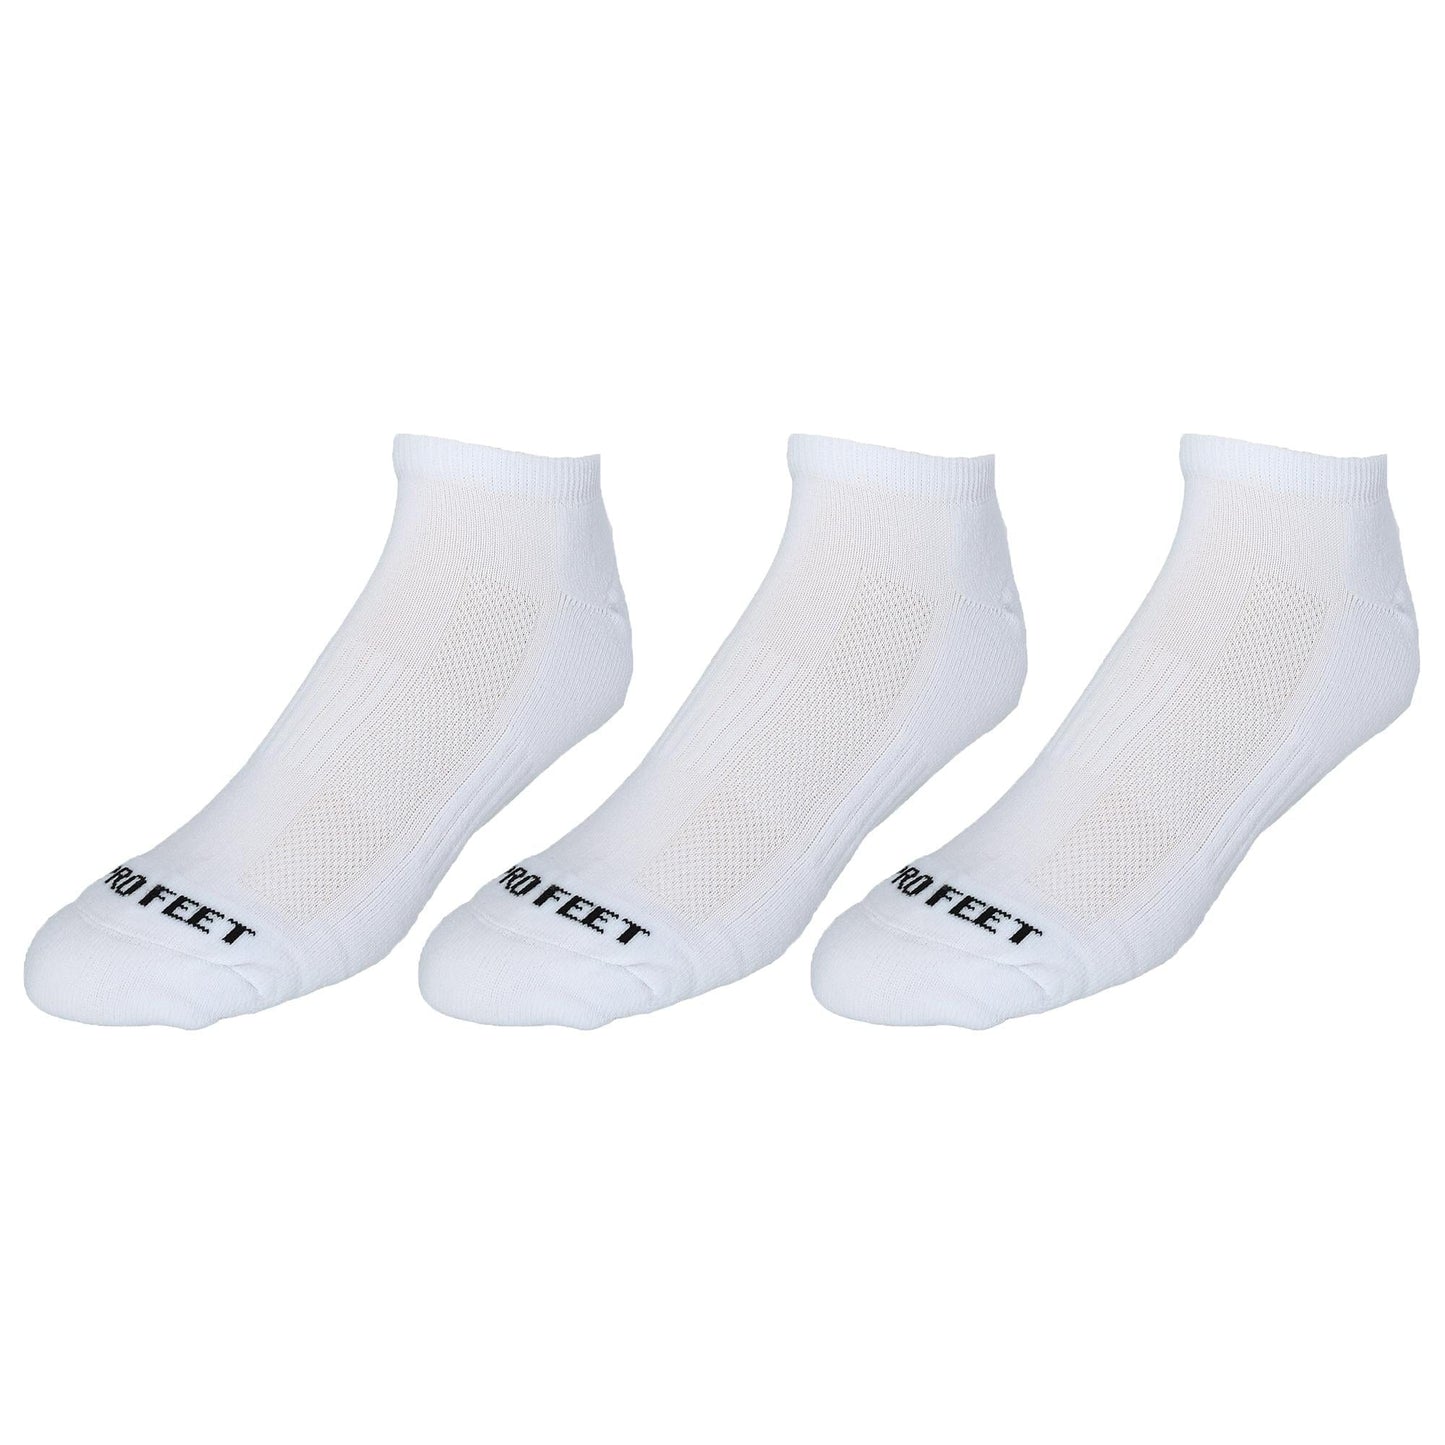 Pro Feet Men's Low Cut Athletic Socks